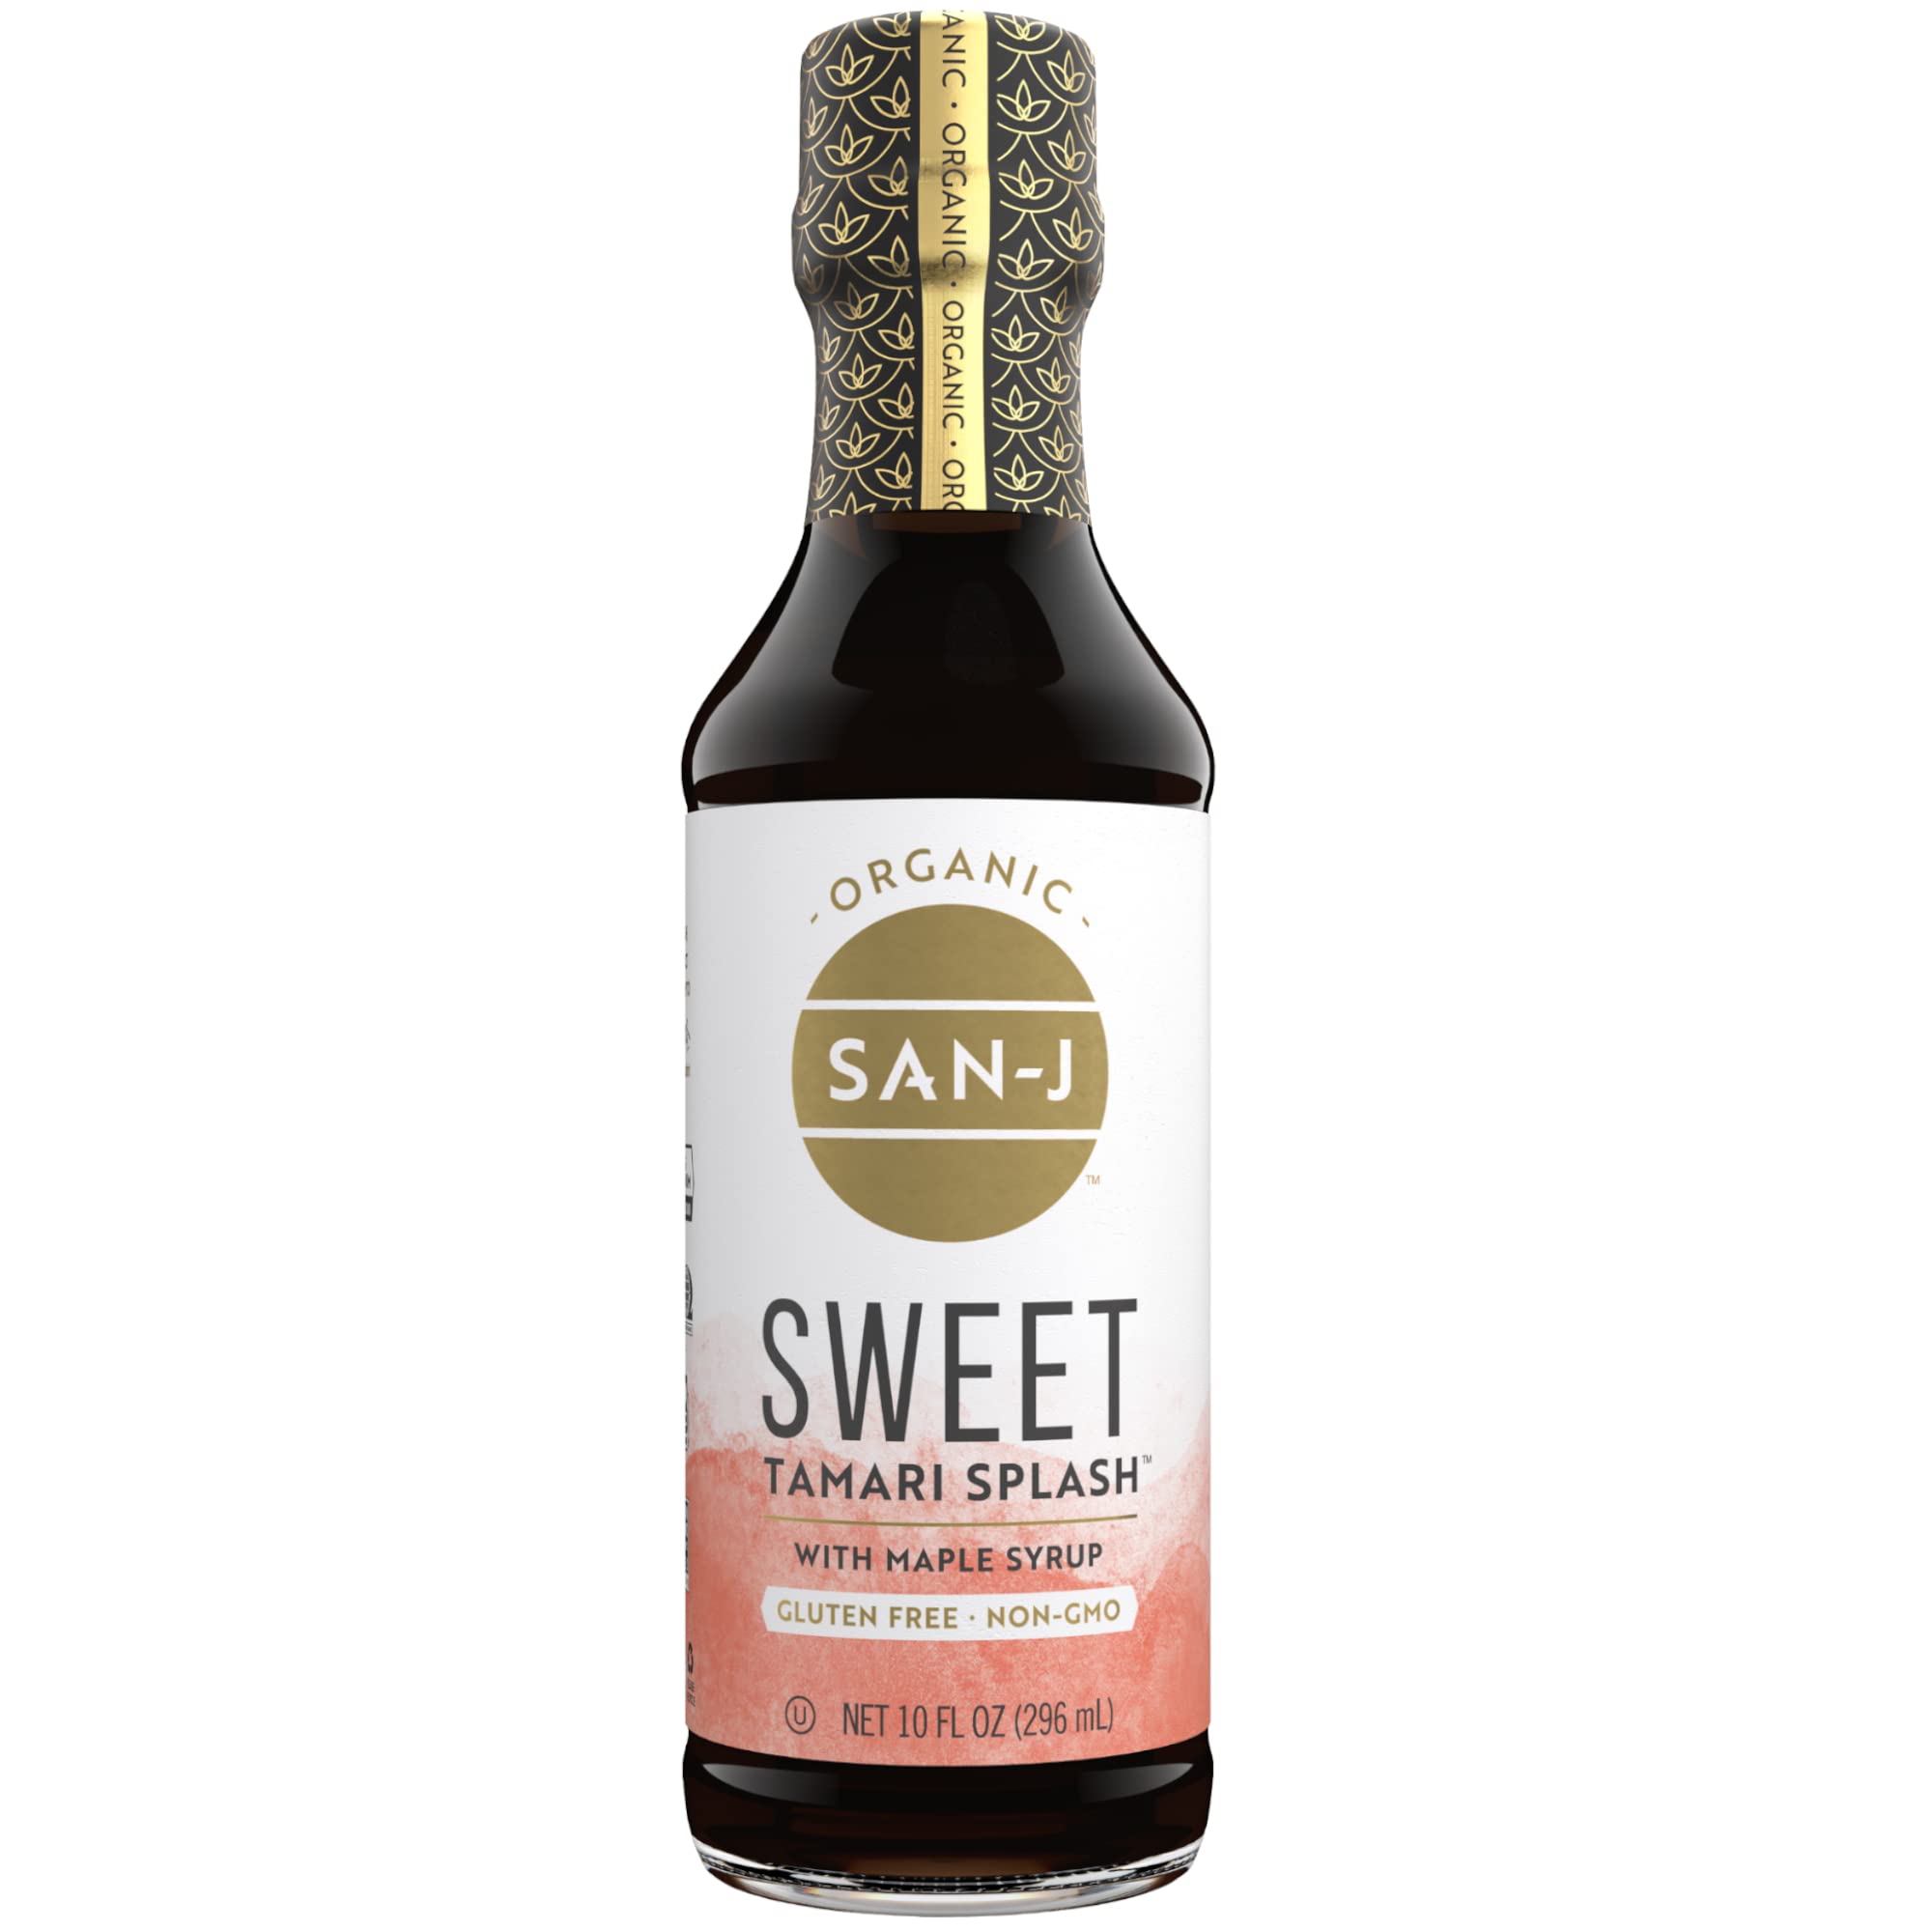 San-J Gluten Free Sweet Tamari Splash